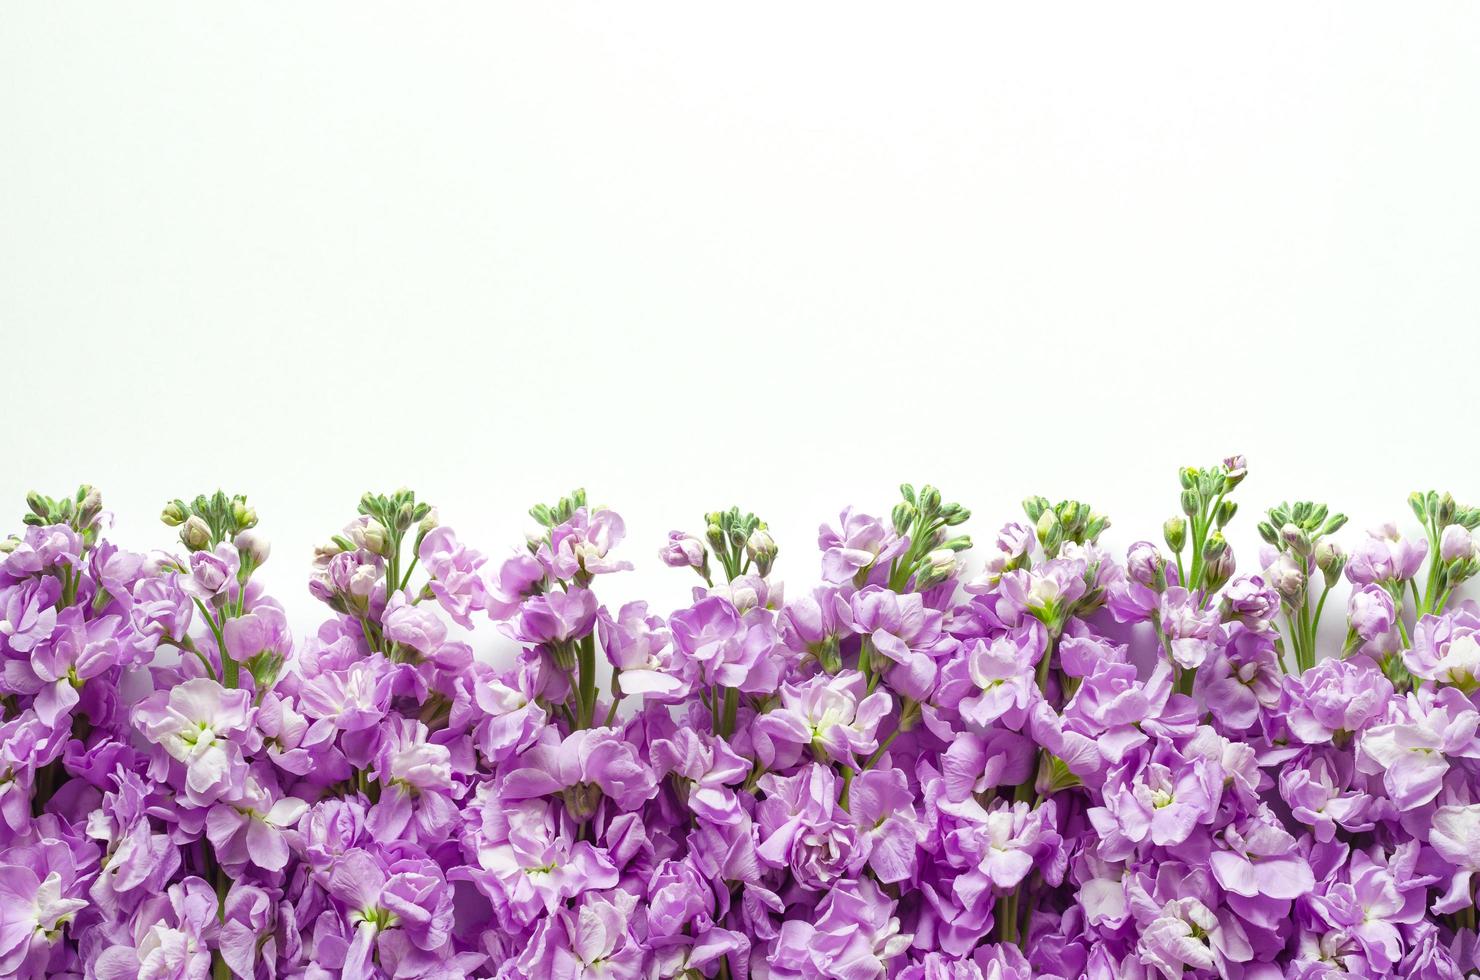 configuração plana de flores matthiola incana de cor roxa colocadas em fundo branco para o conceito de estação de flores de primavera. foto